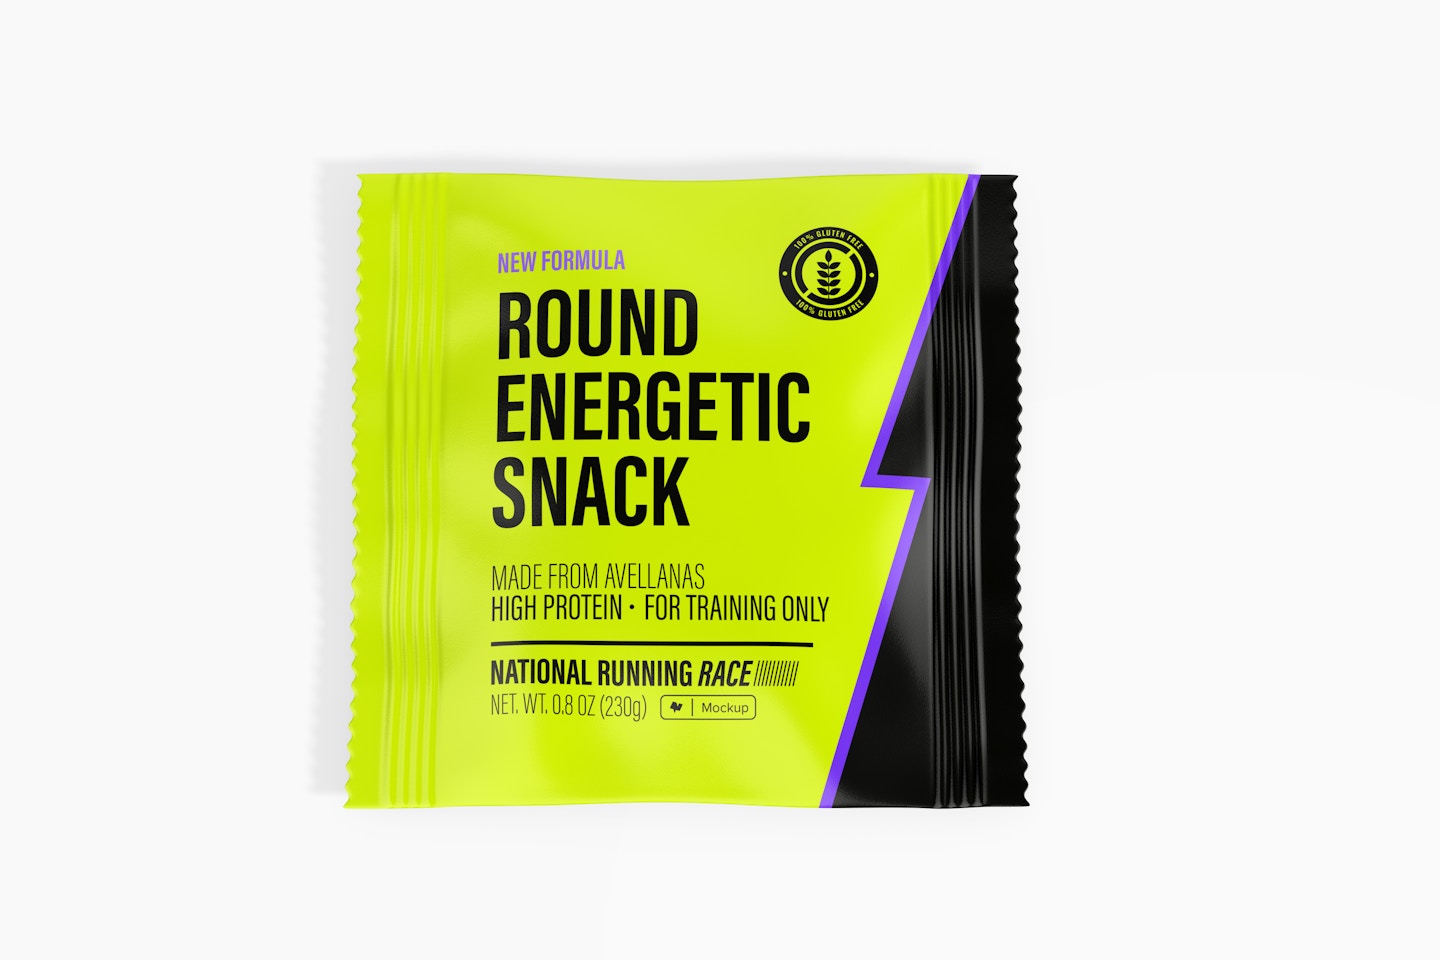 Round Energetic Snack Packaging Mockup, Top View